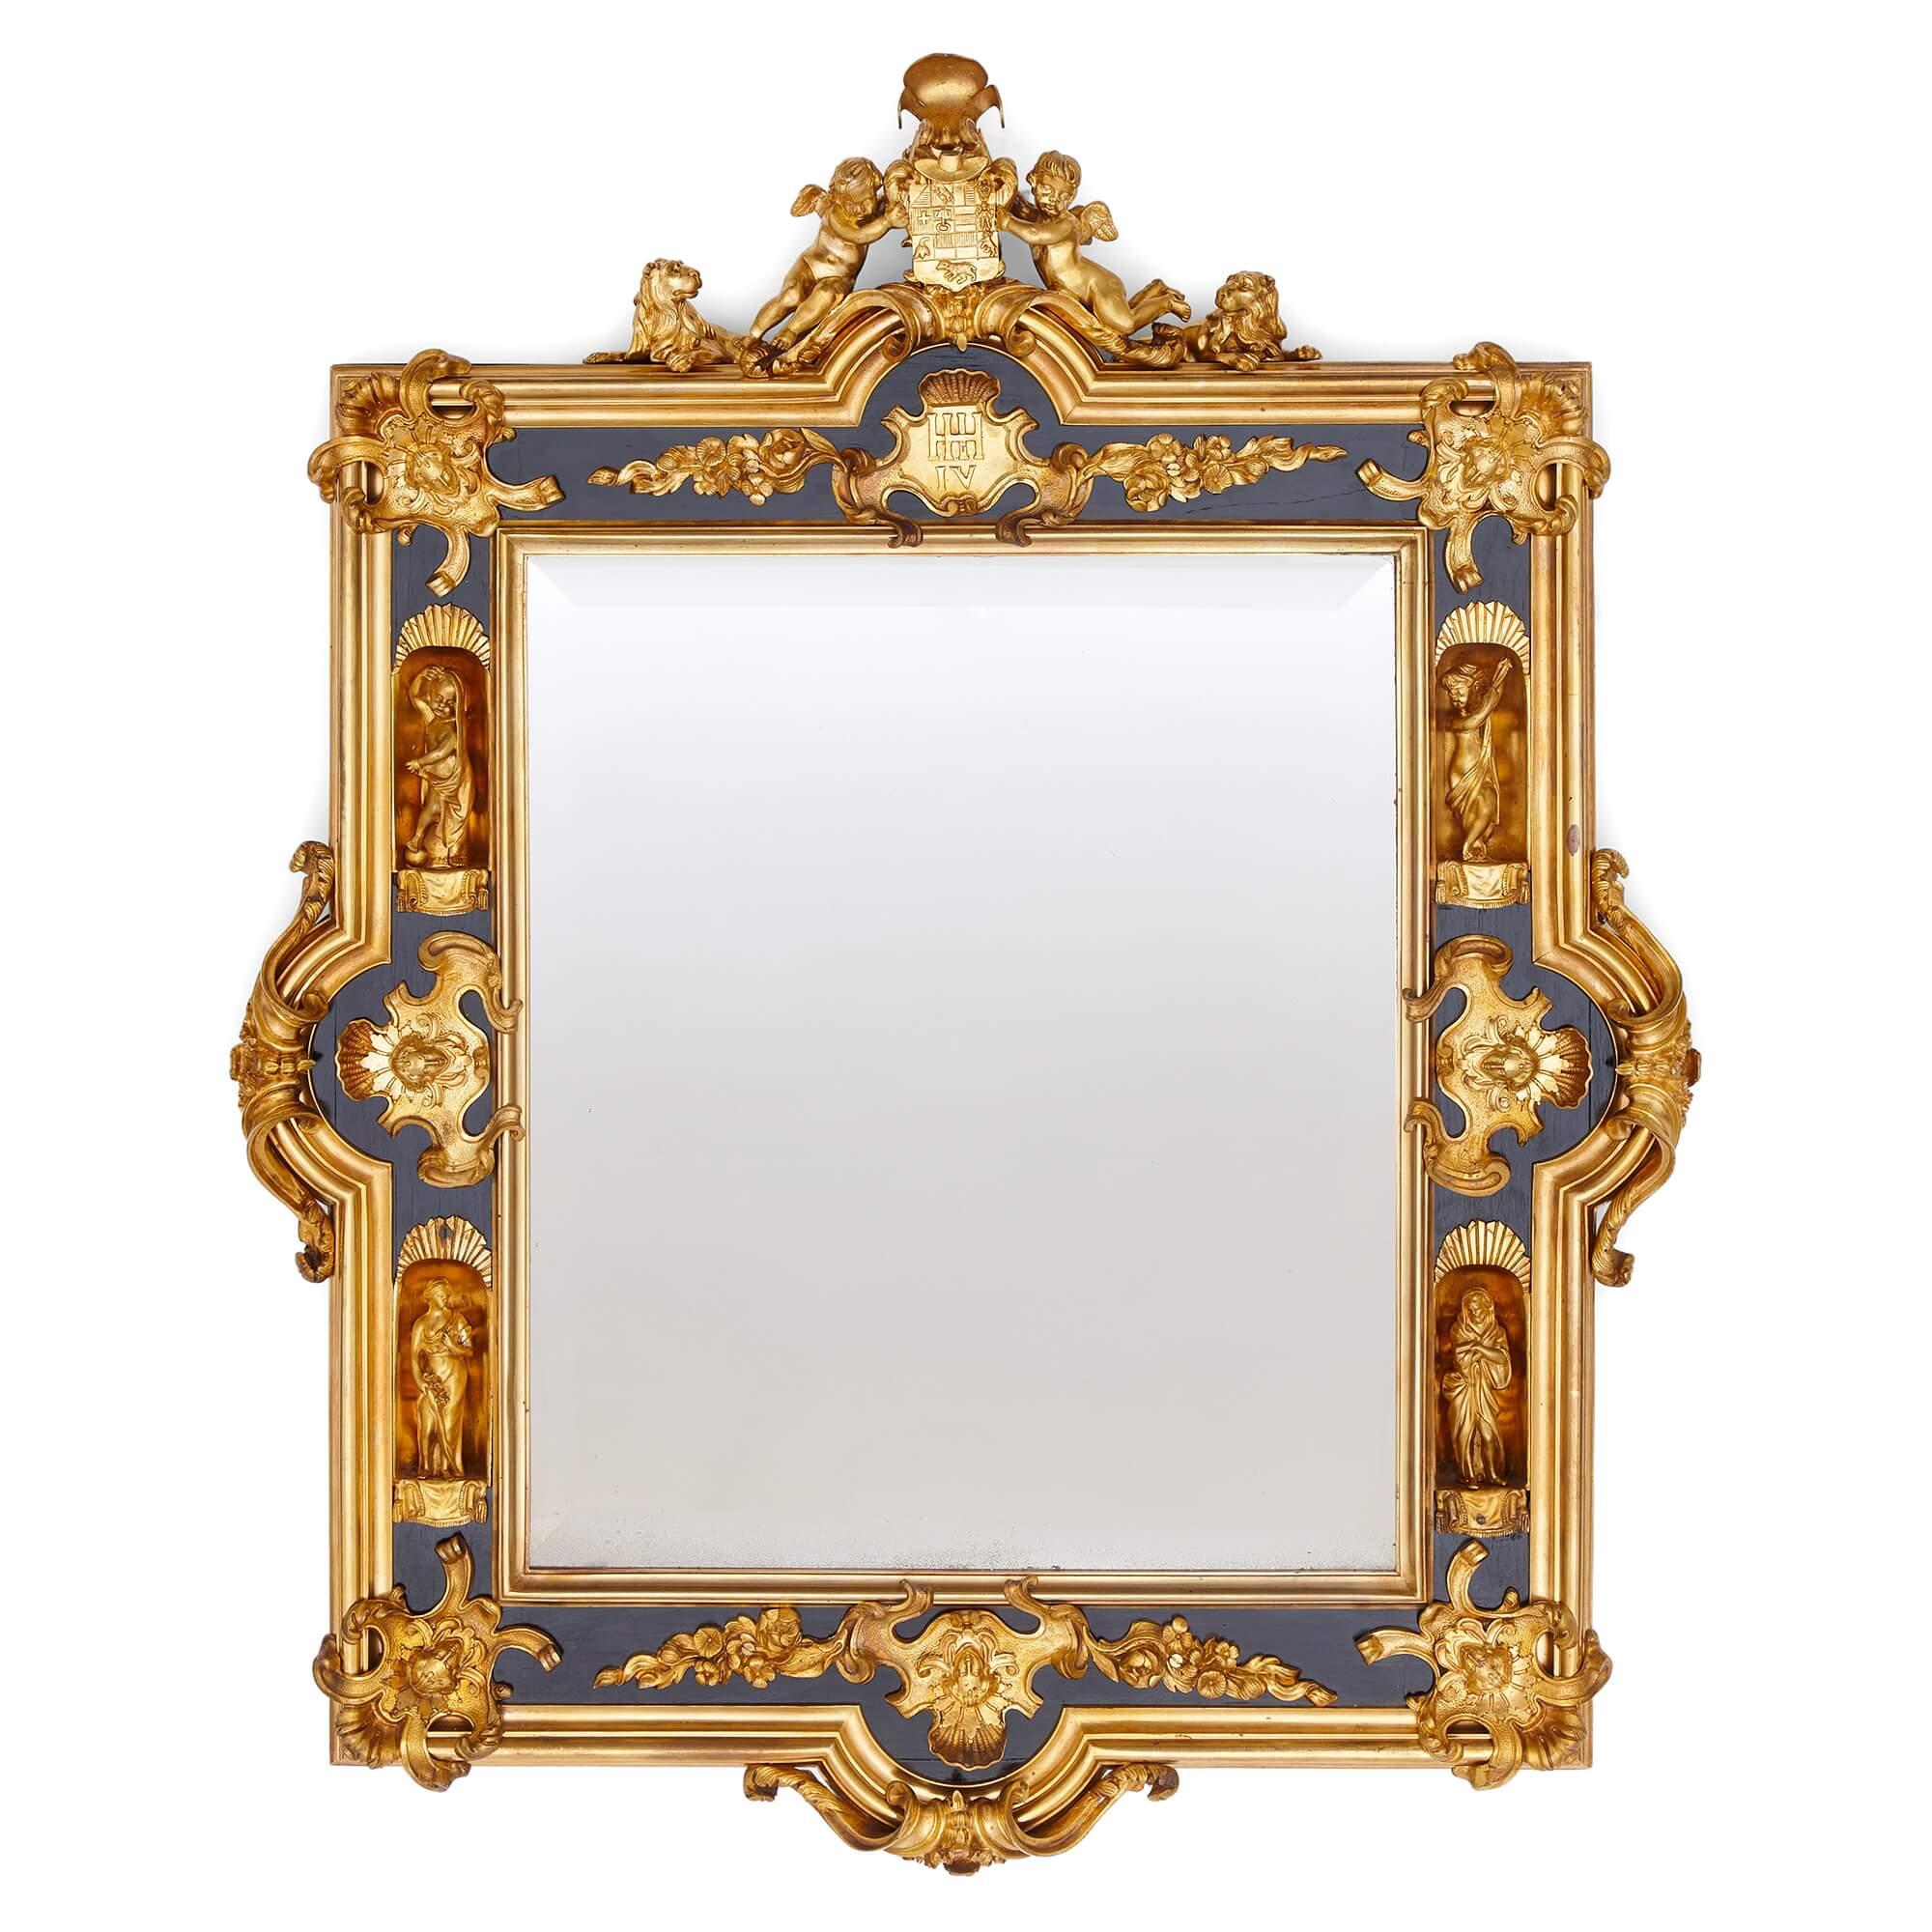 Paire de miroirs anglais en bronze doré et bois ébonisé 
A.I.C., c. 1860
Hauteur 74cm, largeur 59cm, profondeur 7cm 

Magnifiquement réalisée vers 1860 par des artisans anglais, cette paire de miroirs est décorée de plusieurs motifs, certains